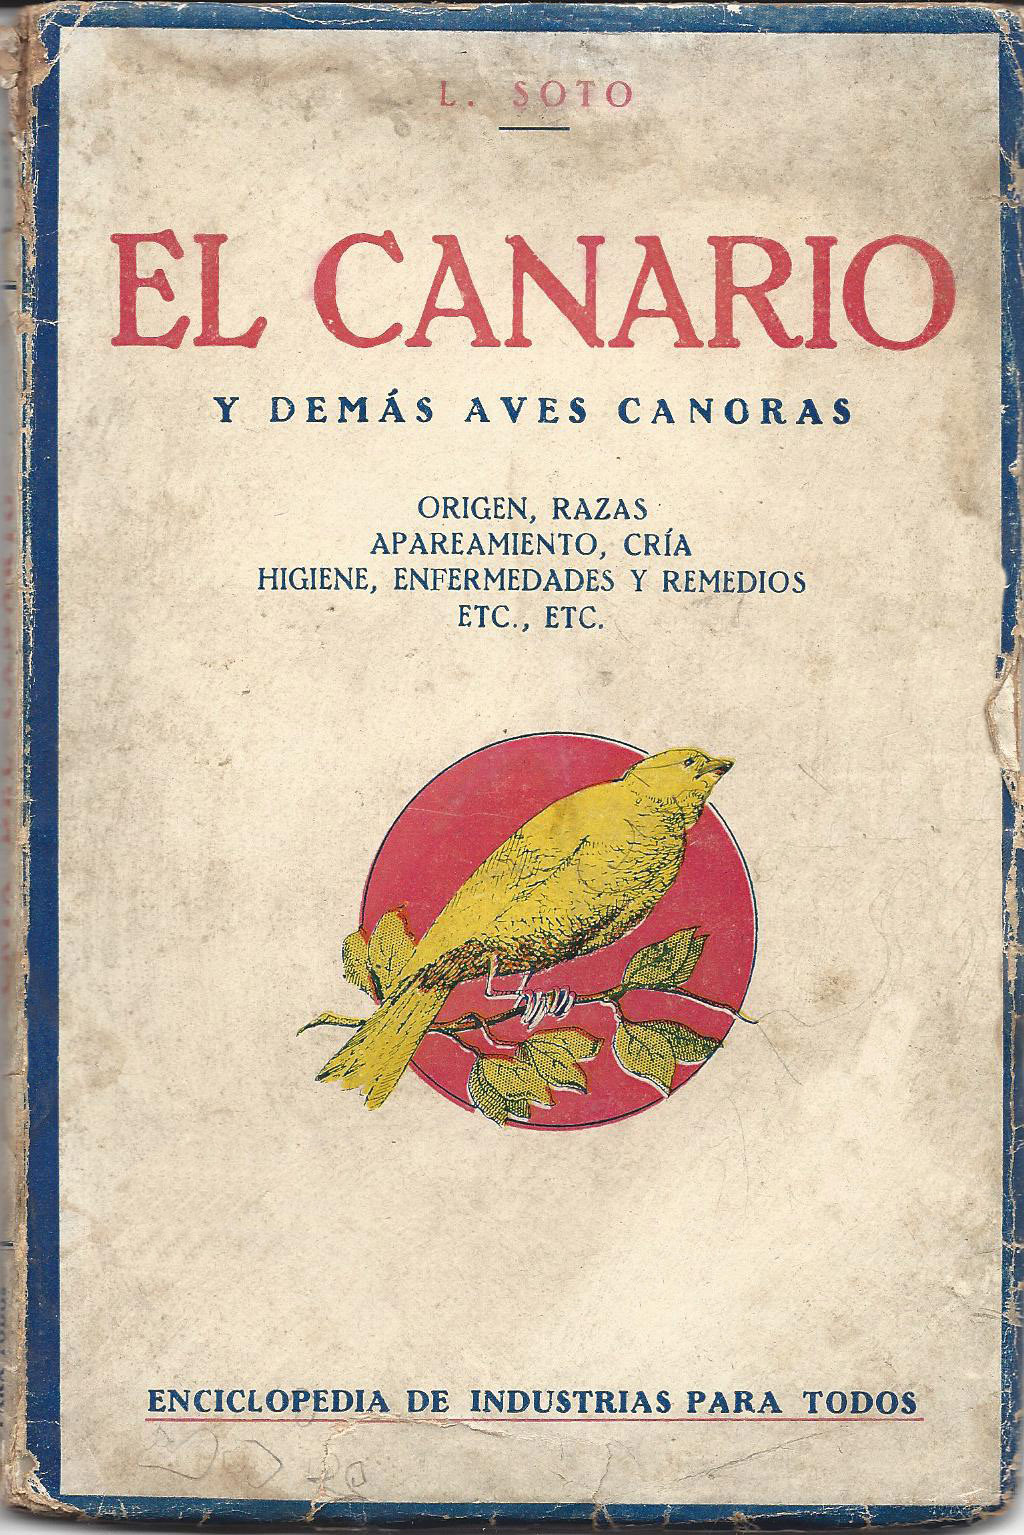 EL CANARIO y DEMÁS AVES CANORAS